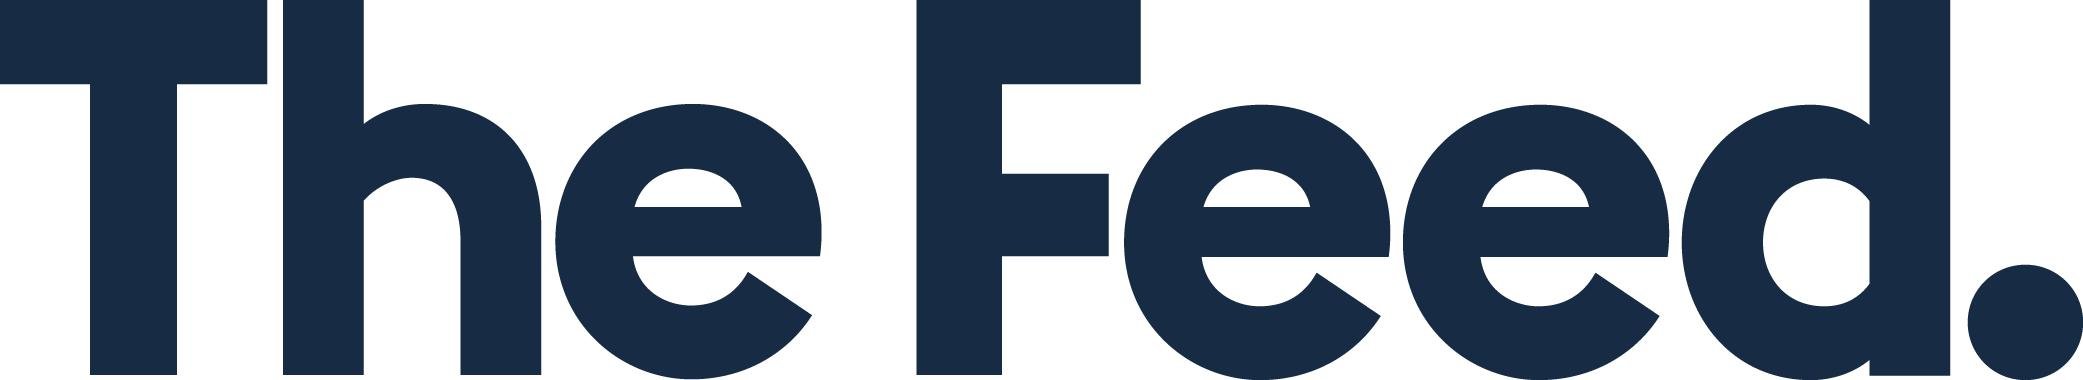 Feed_Logo_Blue.jpg